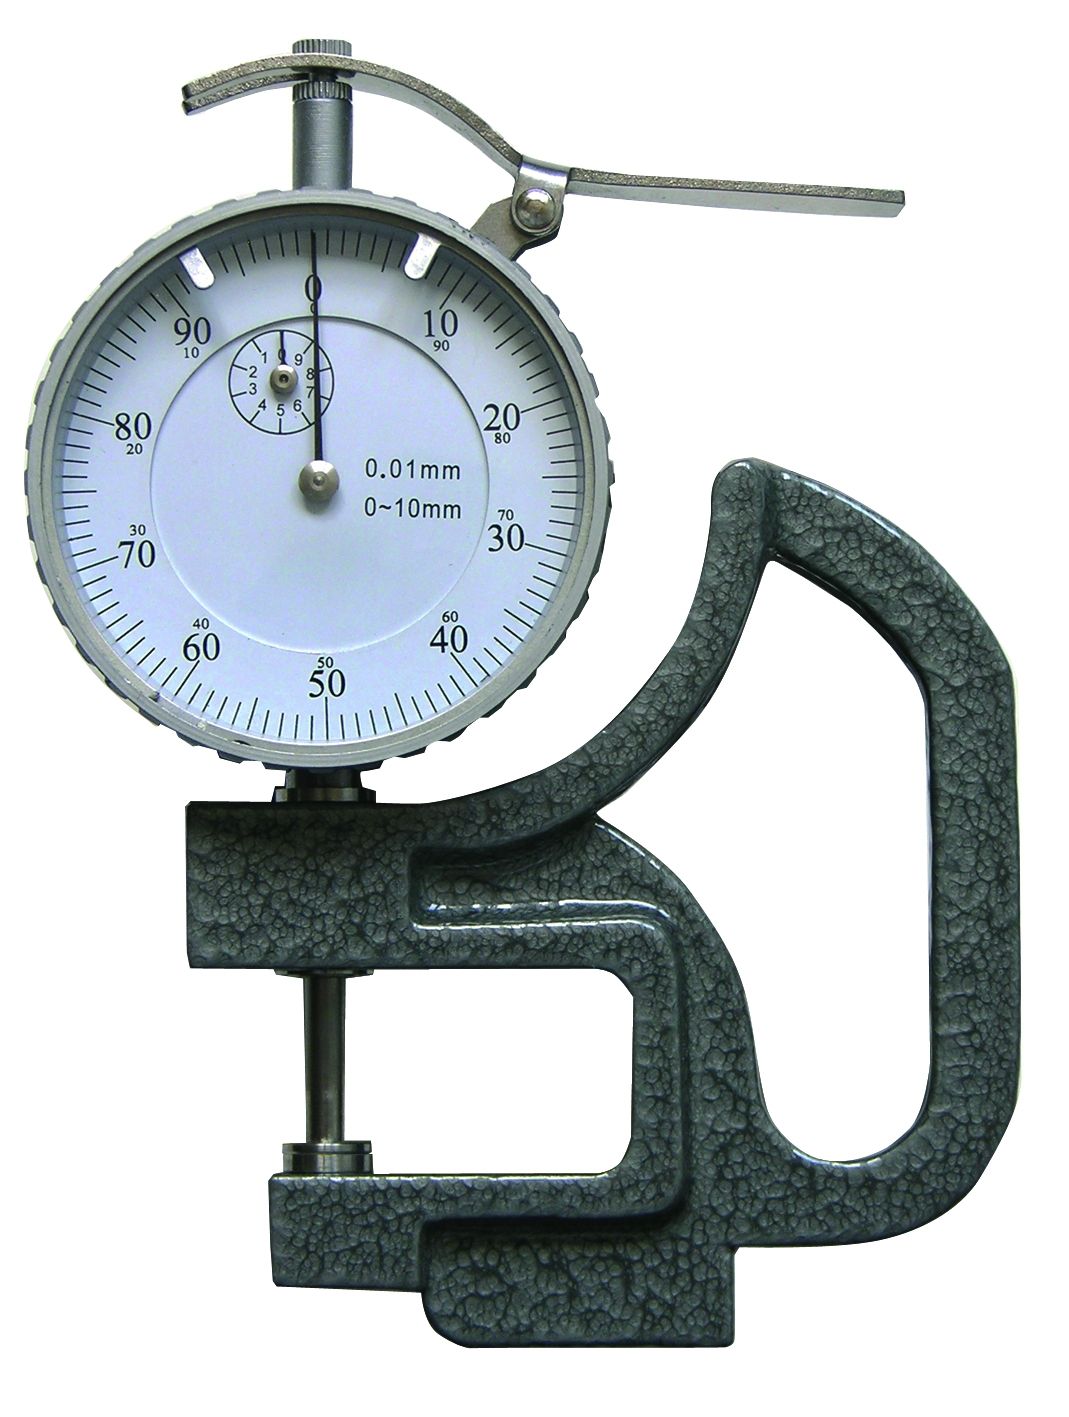 Analoges Dicken-Messgerät 0-10 x 30 mm | 0,01 mm mit Messuhr und Anlifthebel